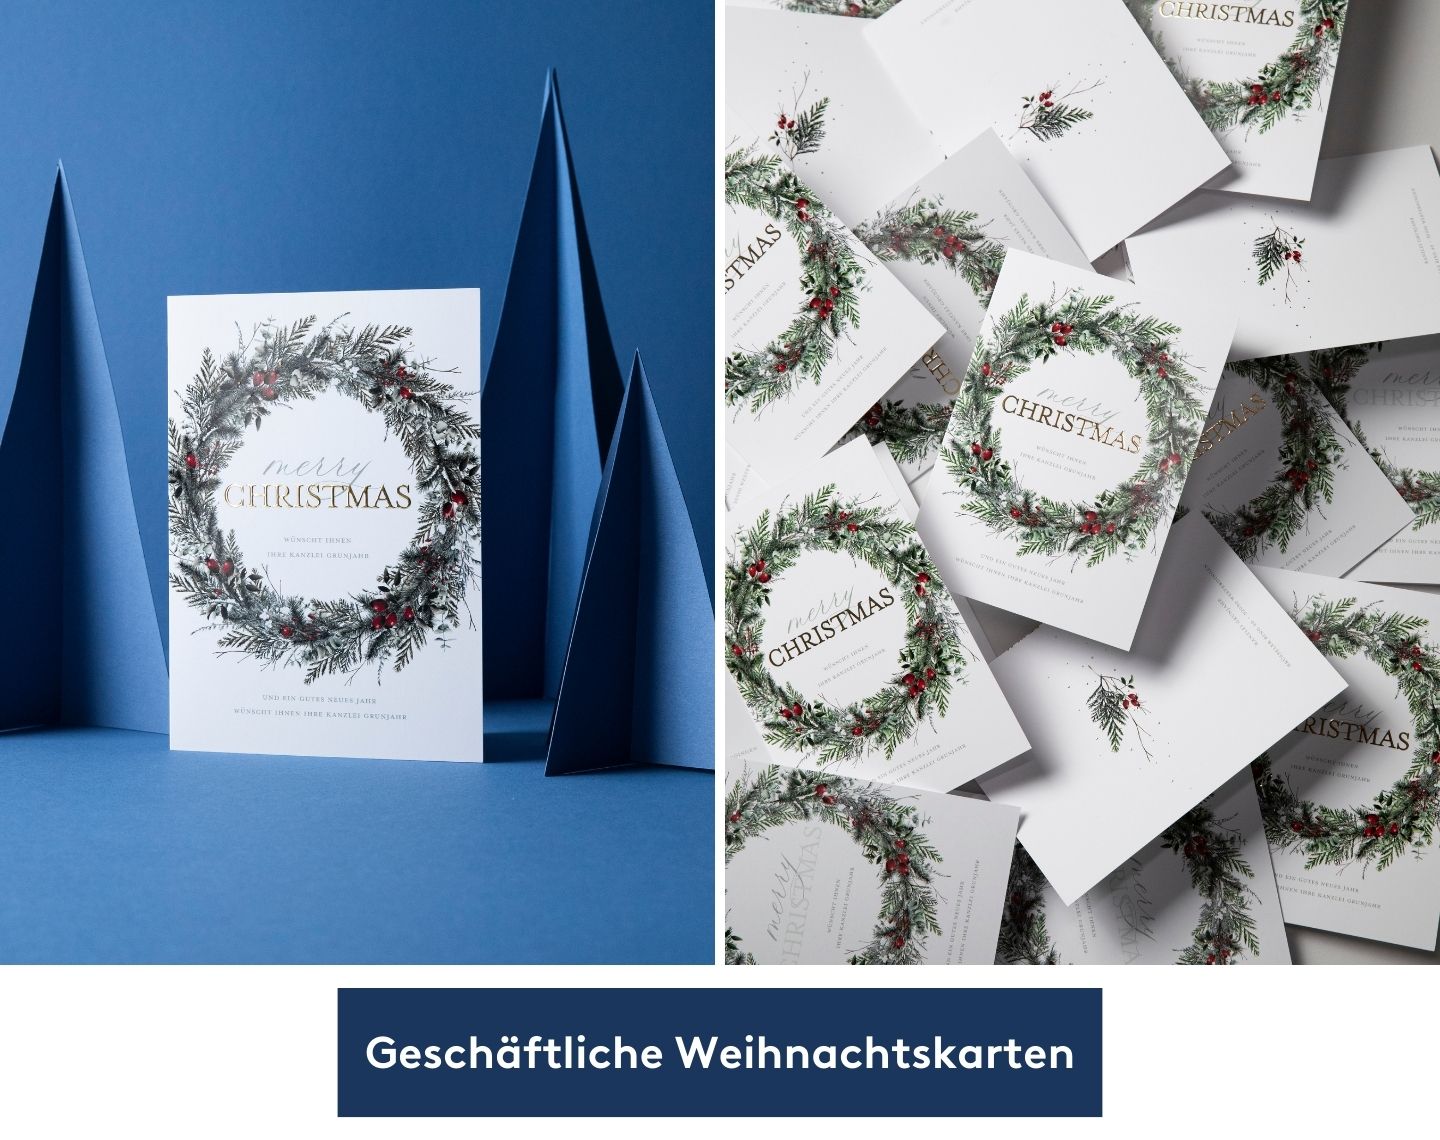 Geschäftliche Weihnachtskarte steht vor blauem Hintergrund.